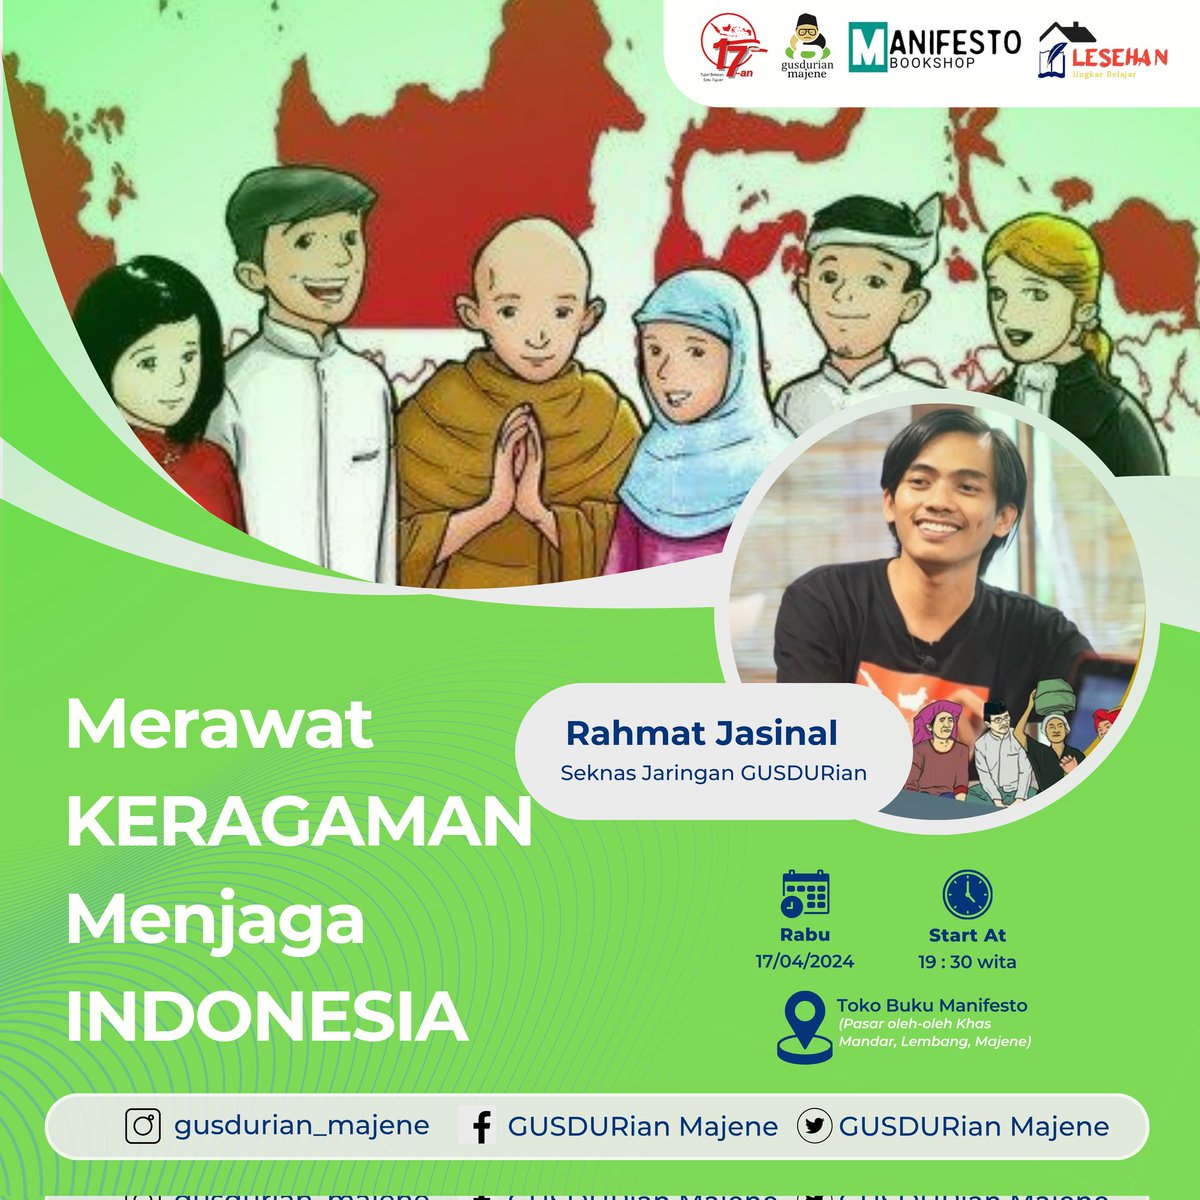 Mencintai keragaman berarti mencintai Indonesia
#Forum17an #Indonesiarumahbersama